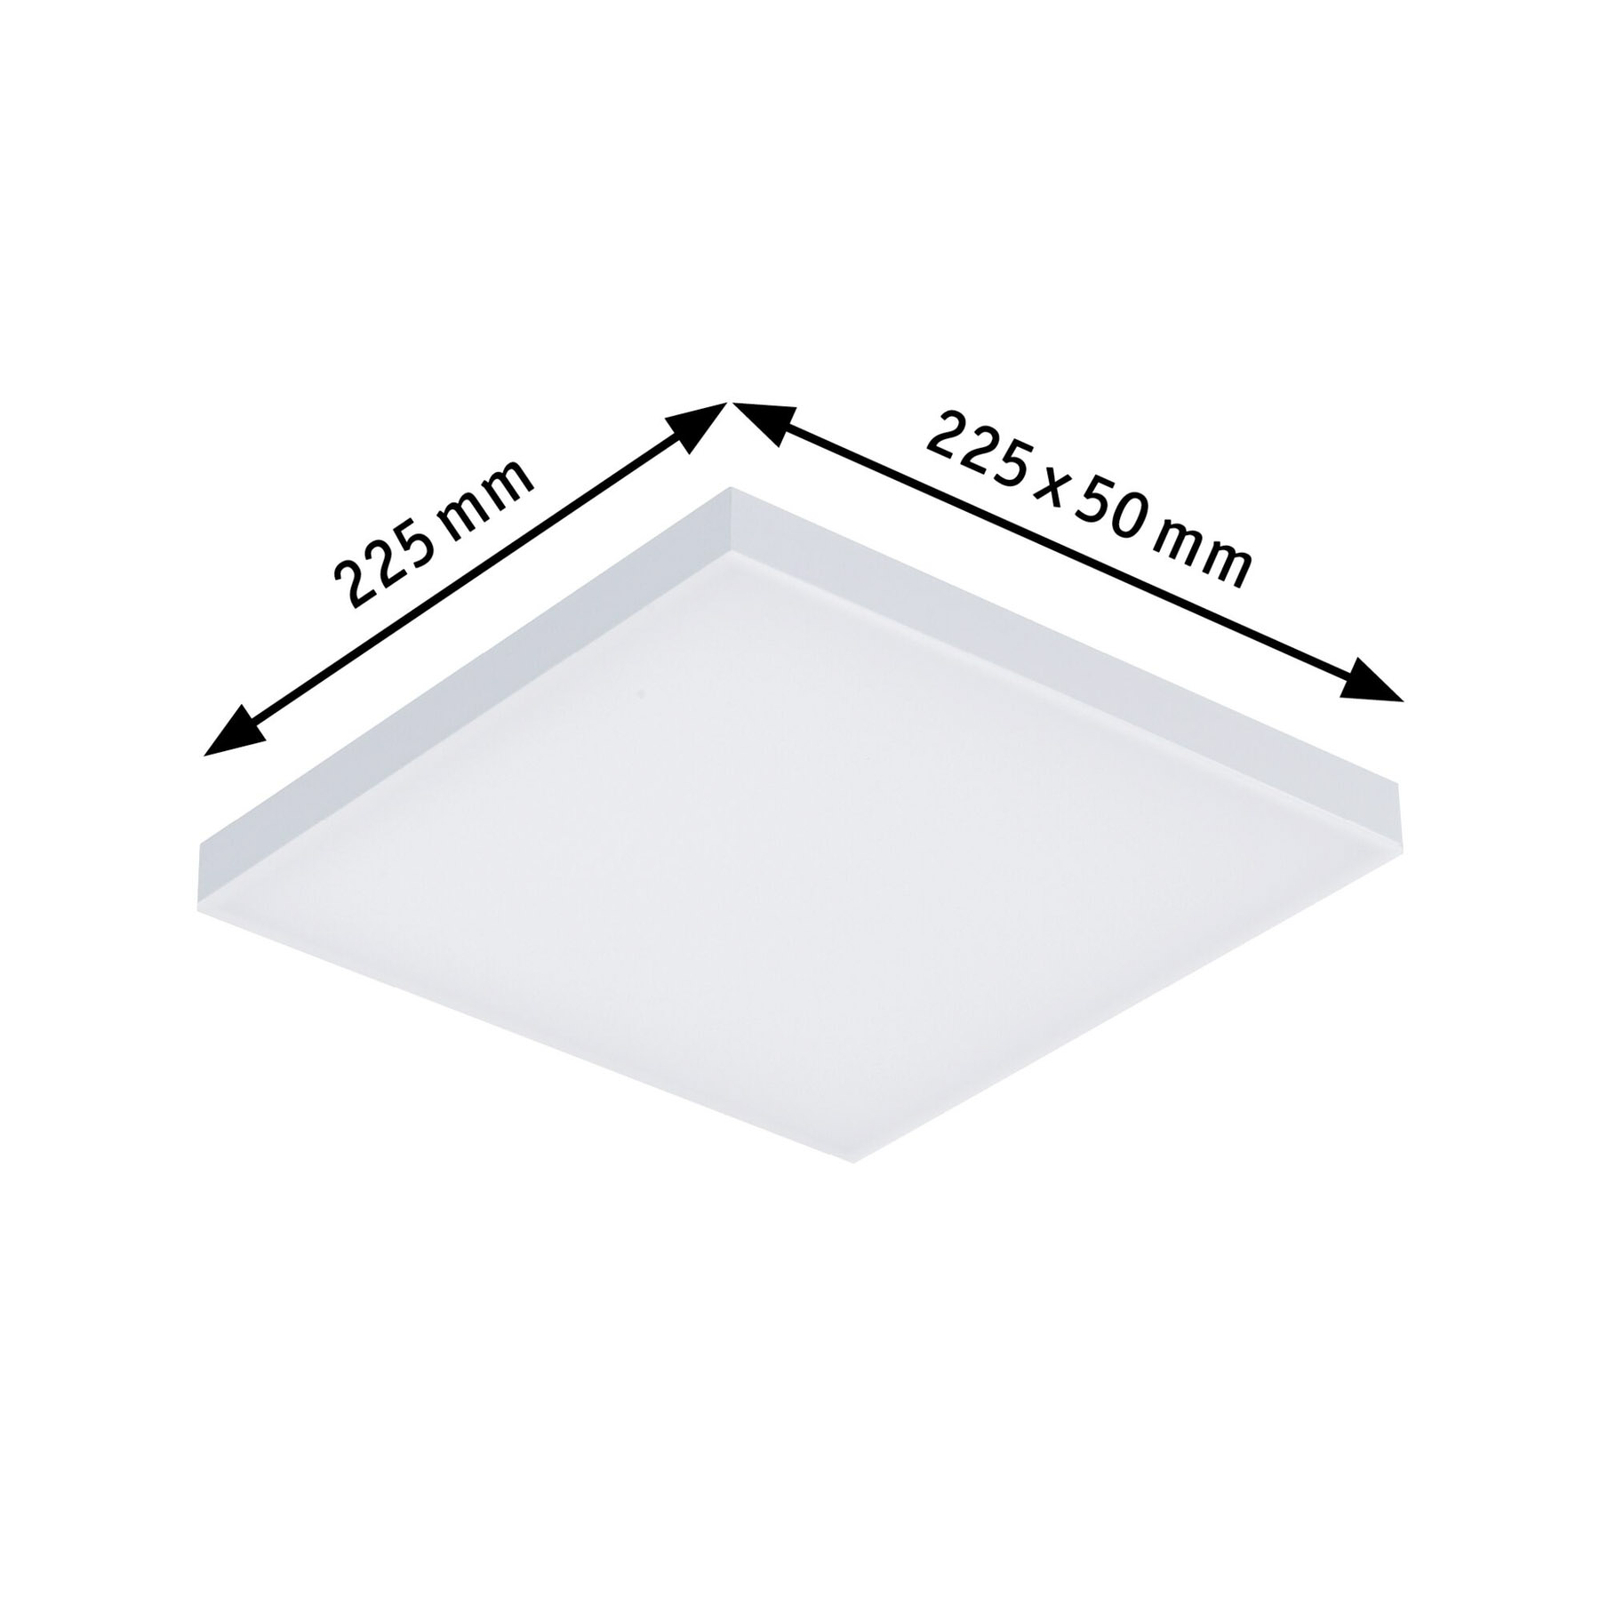 Paulmann Velora LED ceiling light 22.5 x 22.5cm